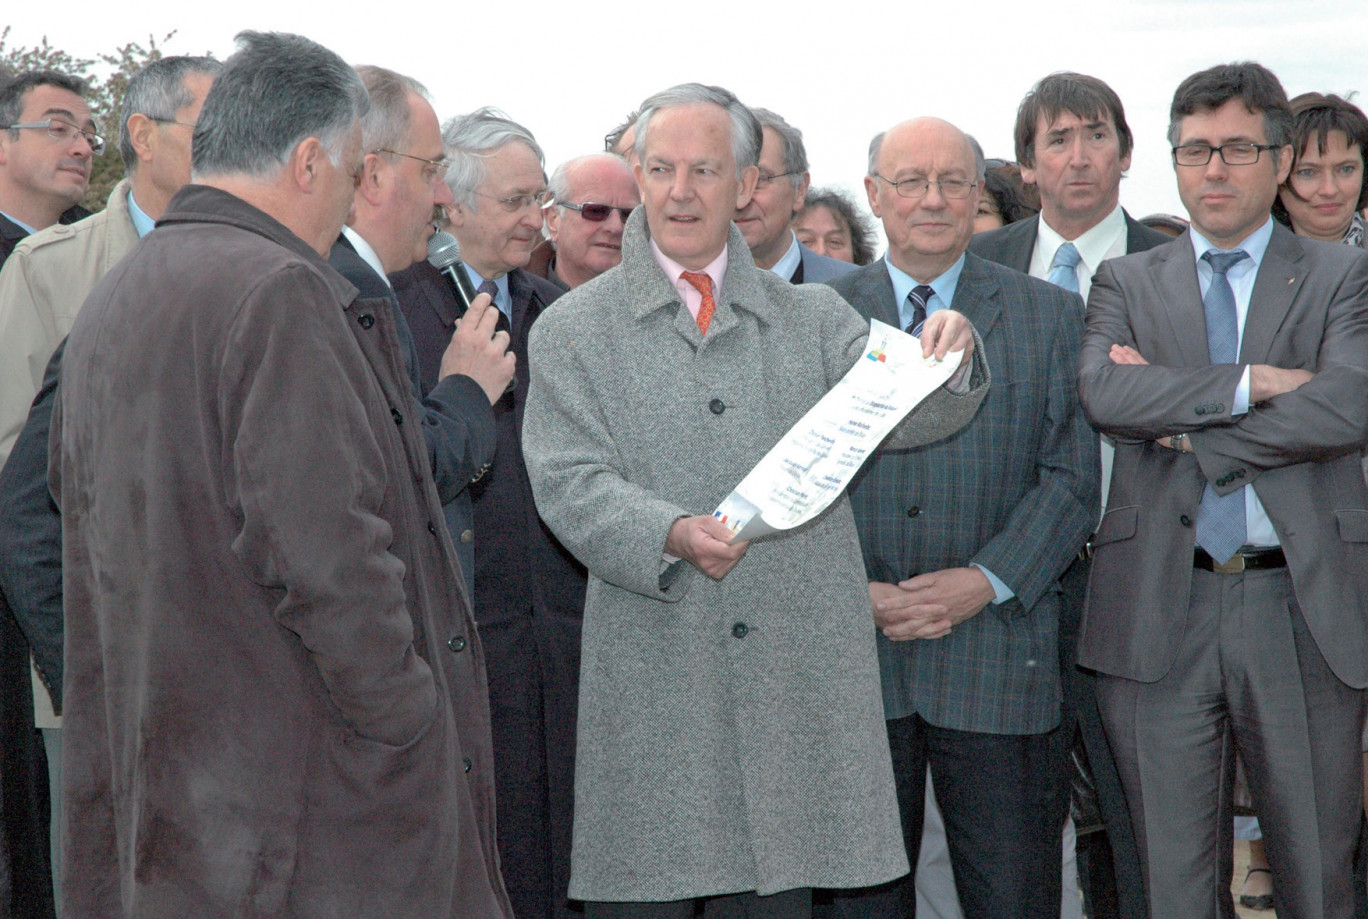 Lors de l’inauguration du Raquet, Jacques Vernier tendant à Christian Poiret, président de la CAD, le parchemin à enfouir, datant la coupure du ruban.